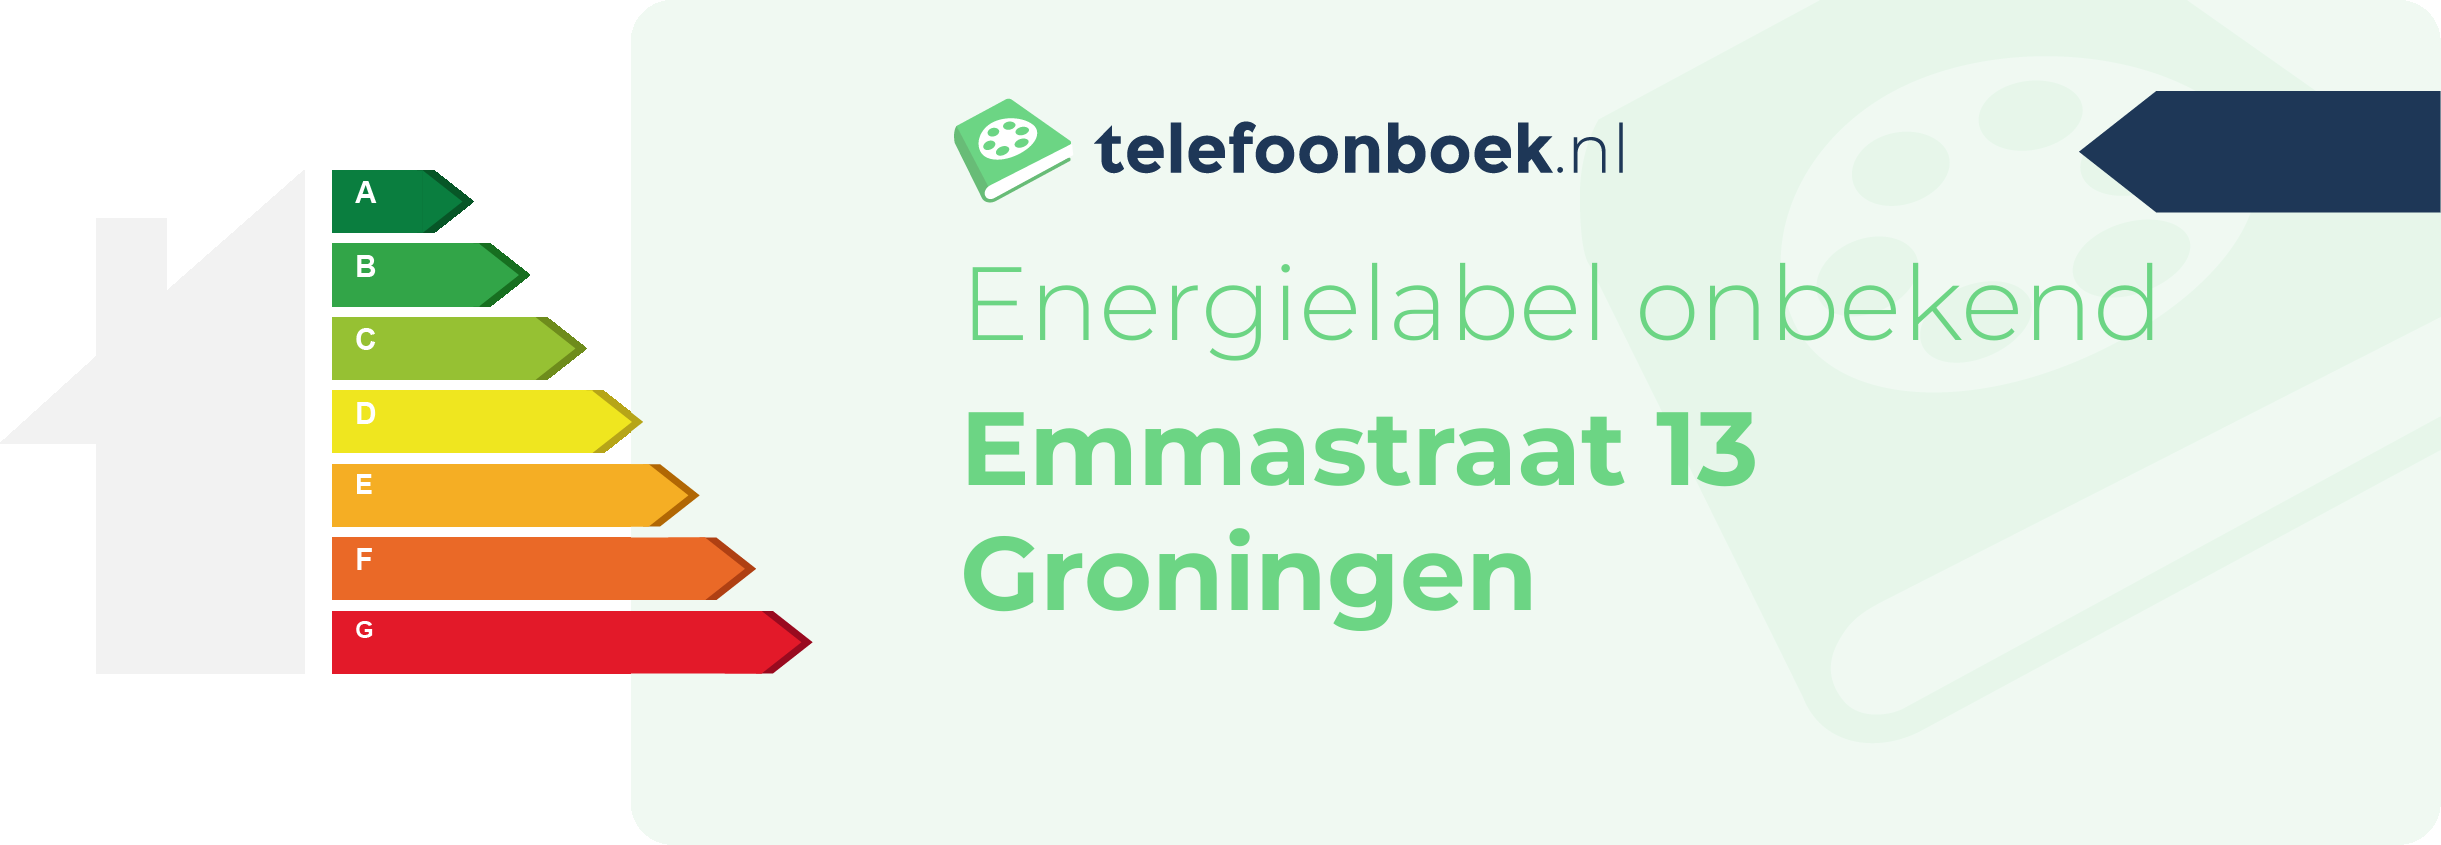 Energielabel Emmastraat 13 Groningen